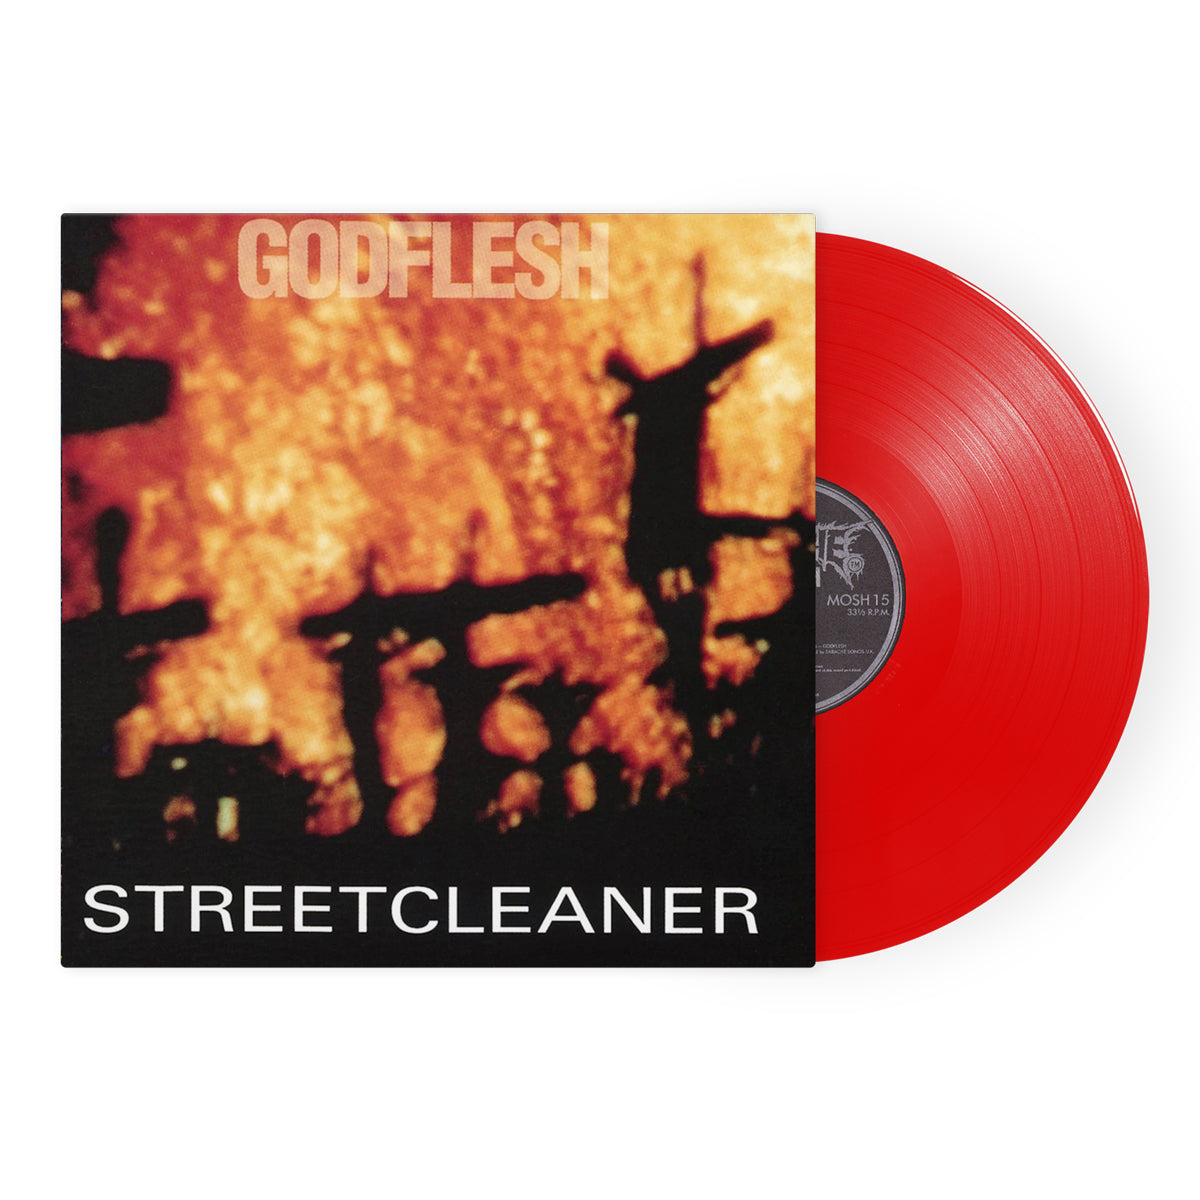 Godflesh "Streetcleaner" Red Vinyl